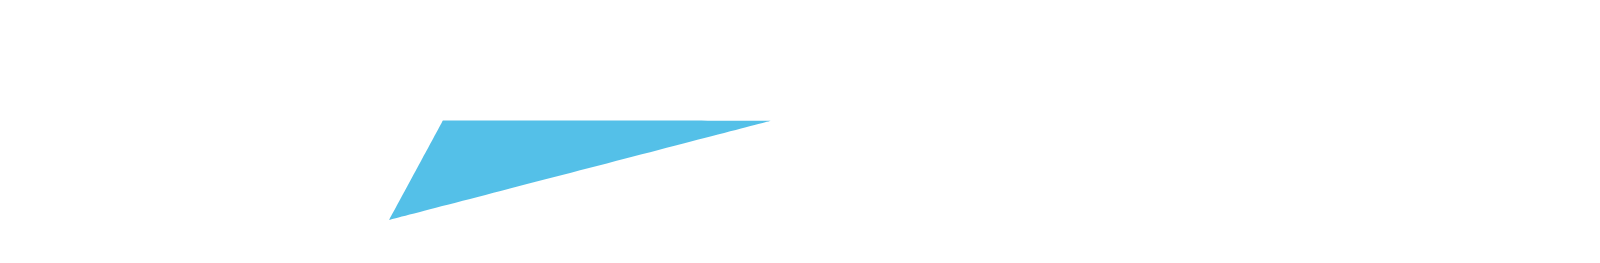 Jabil logo large for dark backgrounds (transparent PNG)